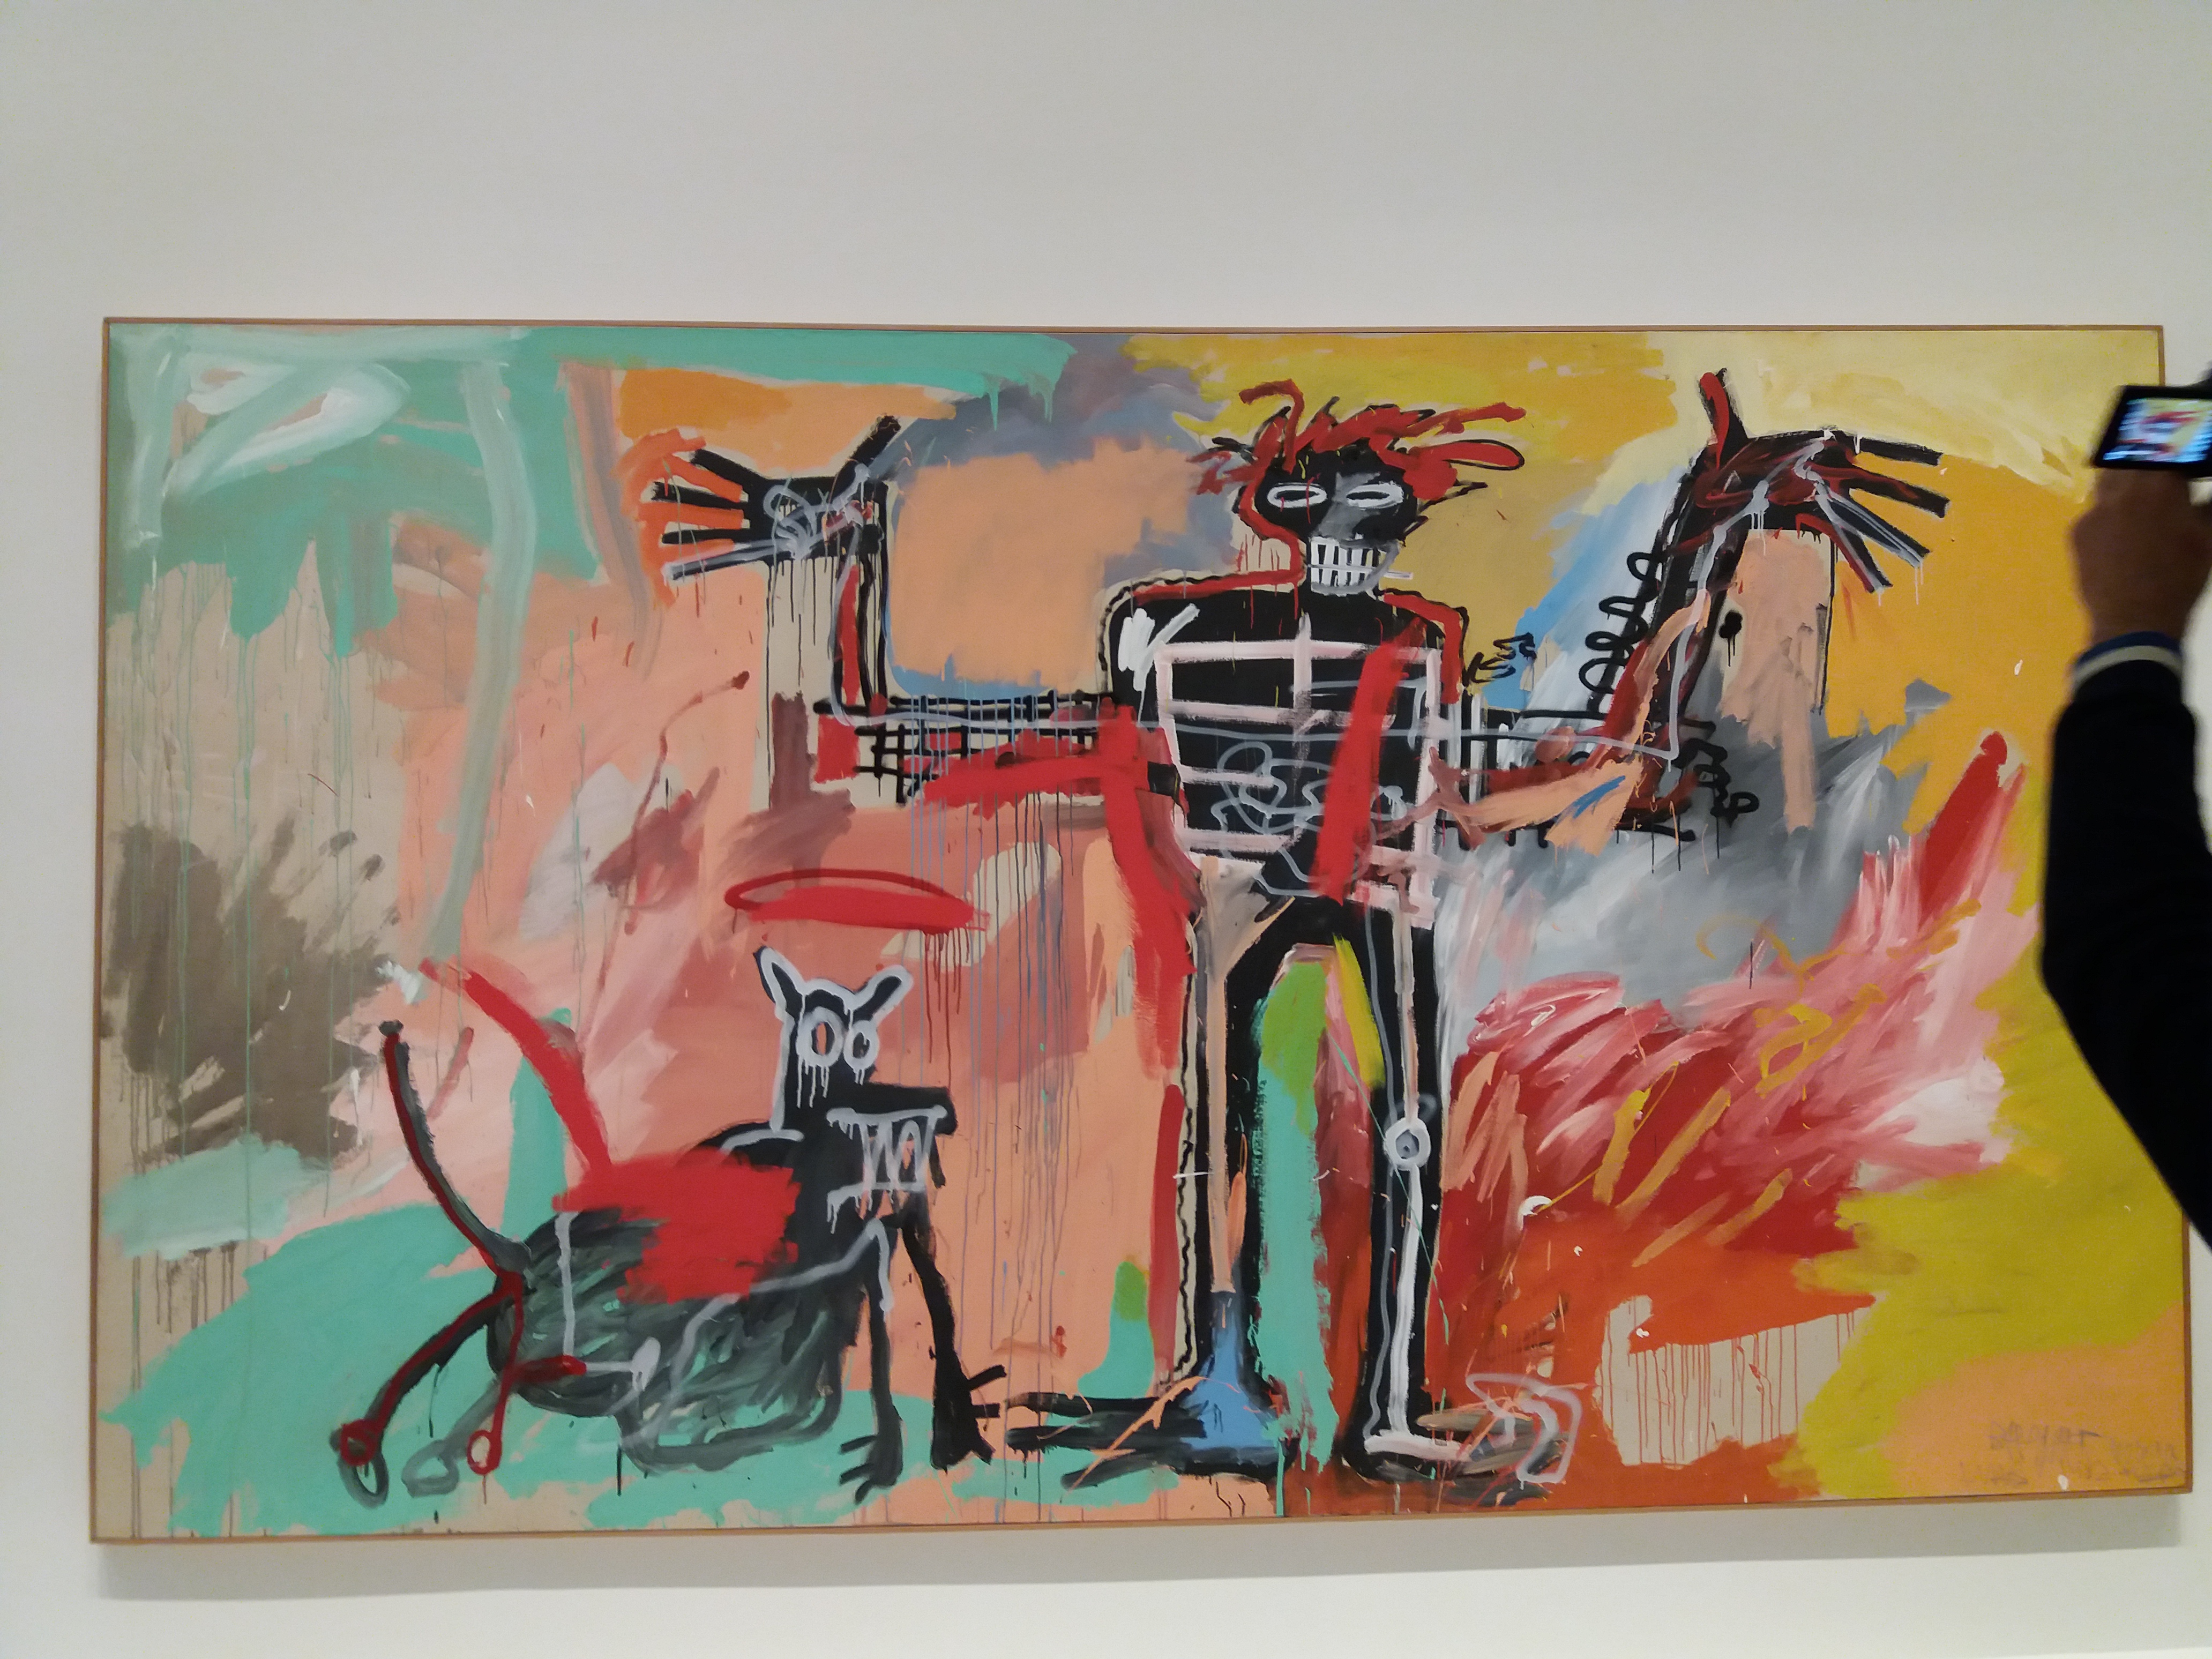 Visite à la fondation Vuitton expo Schiele /Basquiat | peintureacawb